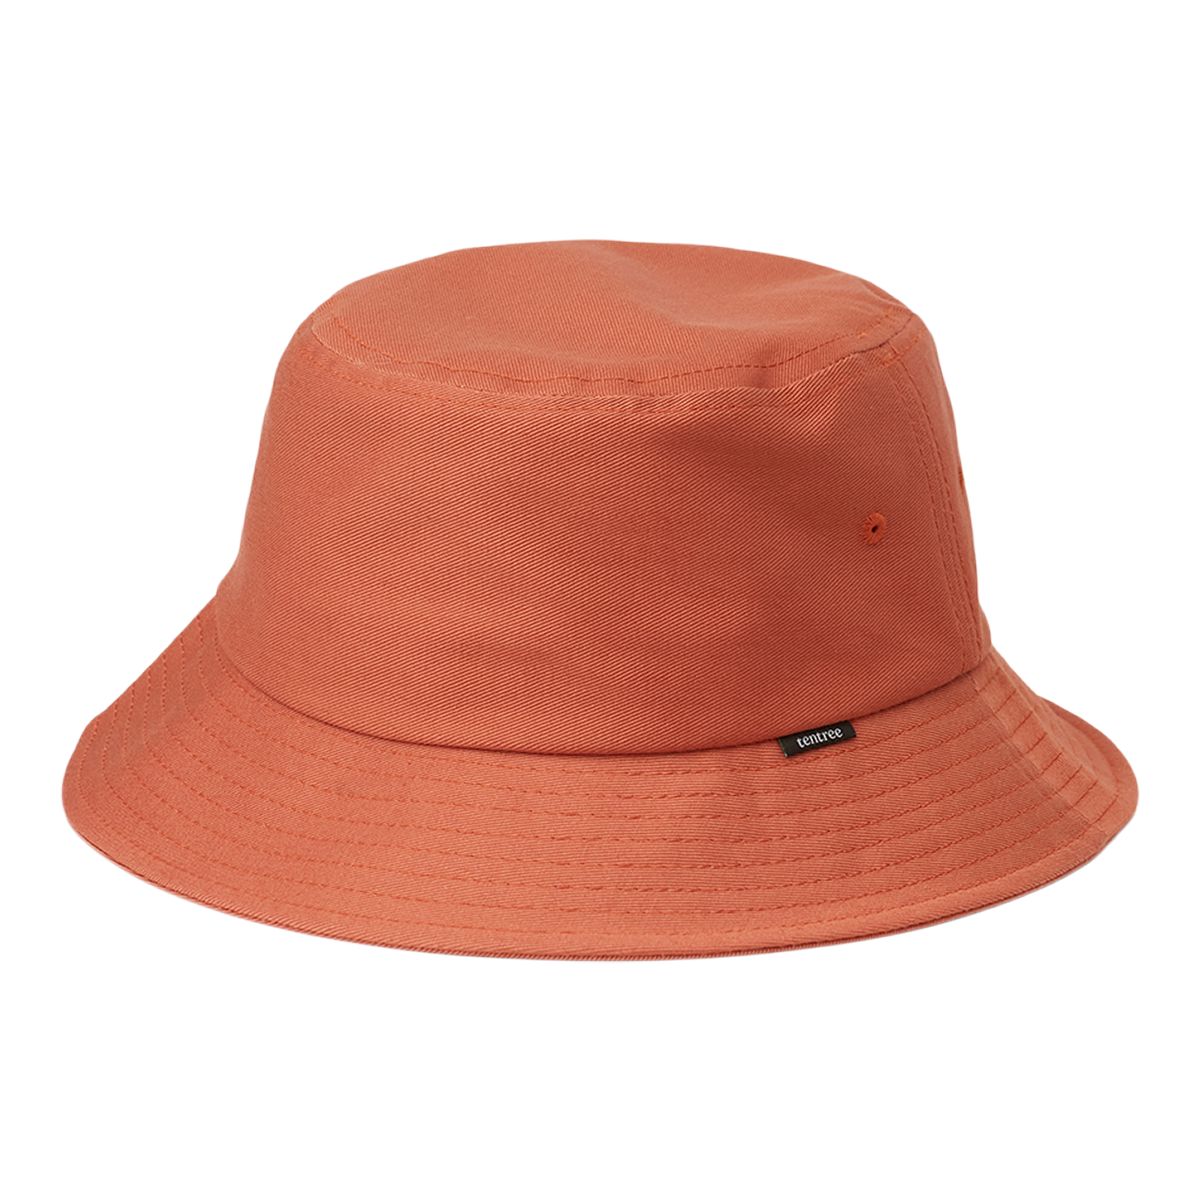 Tentree Women's Bucket Hat